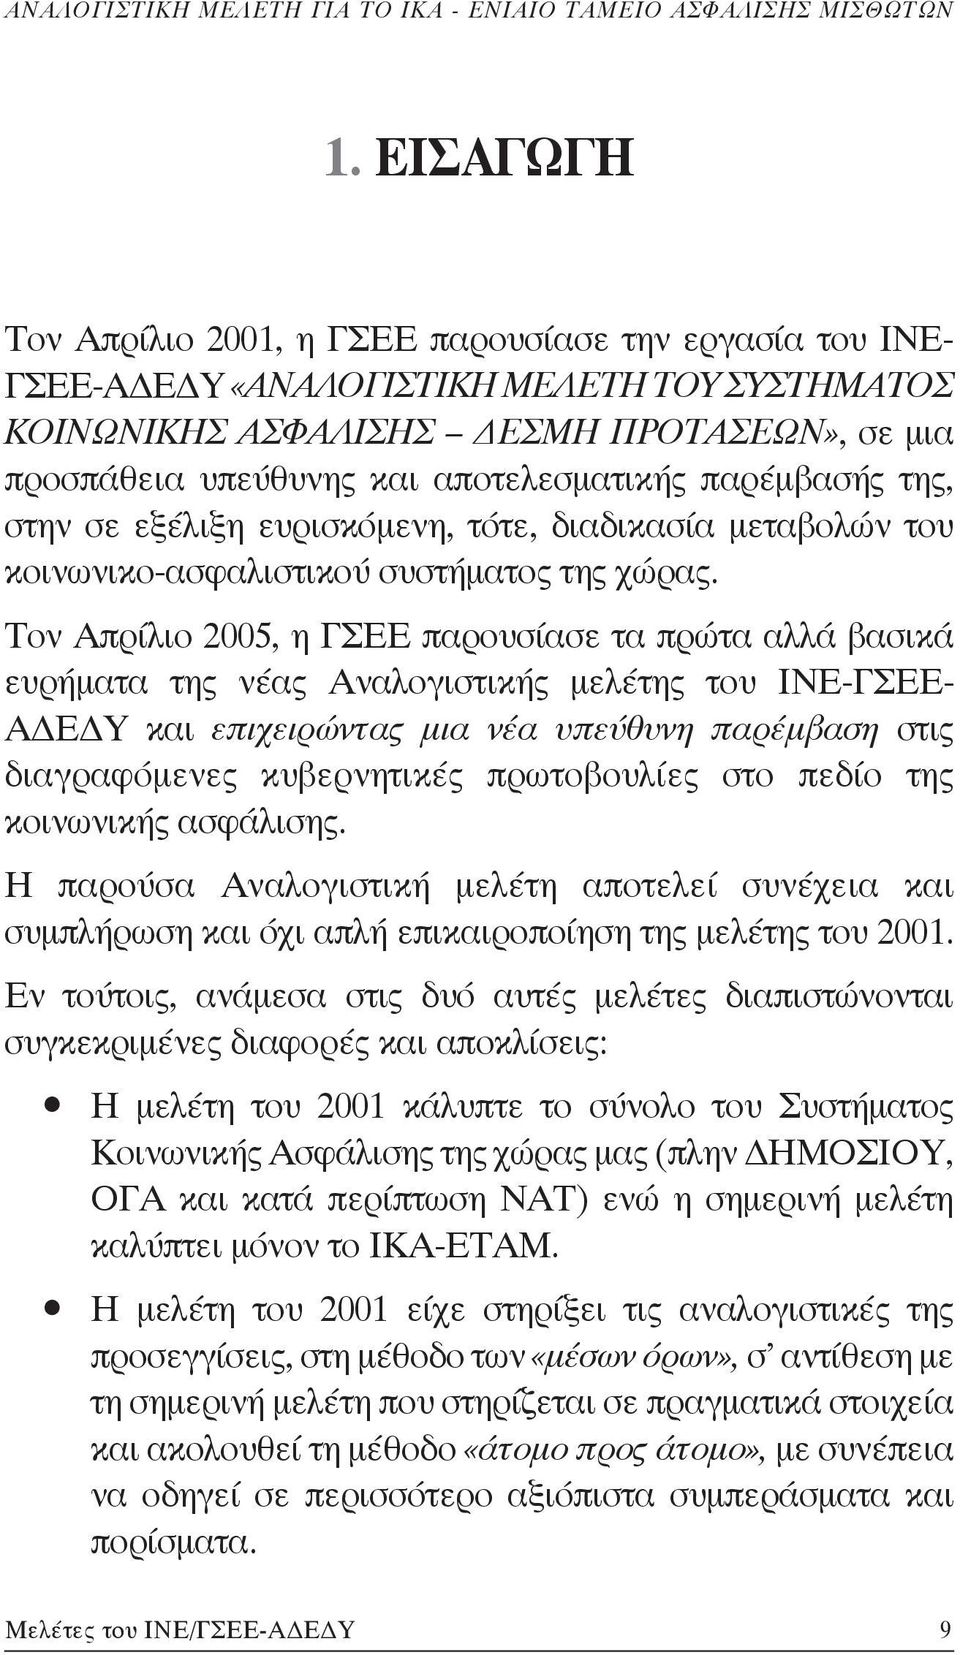 Τον Απρίλιο 2005, η ΓΣΕΕ παρουσίασε τα πρώτα αλλά βασικά ευρήματα της νέας Αναλογιστικής μελέτης του ΙΝΕ-ΓΣΕΕ- ΑΔΕΔΥ και επιχειρώντας μια νέα υπεύθυνη παρέμβαση στις διαγραφόμενες κυβερνητικές